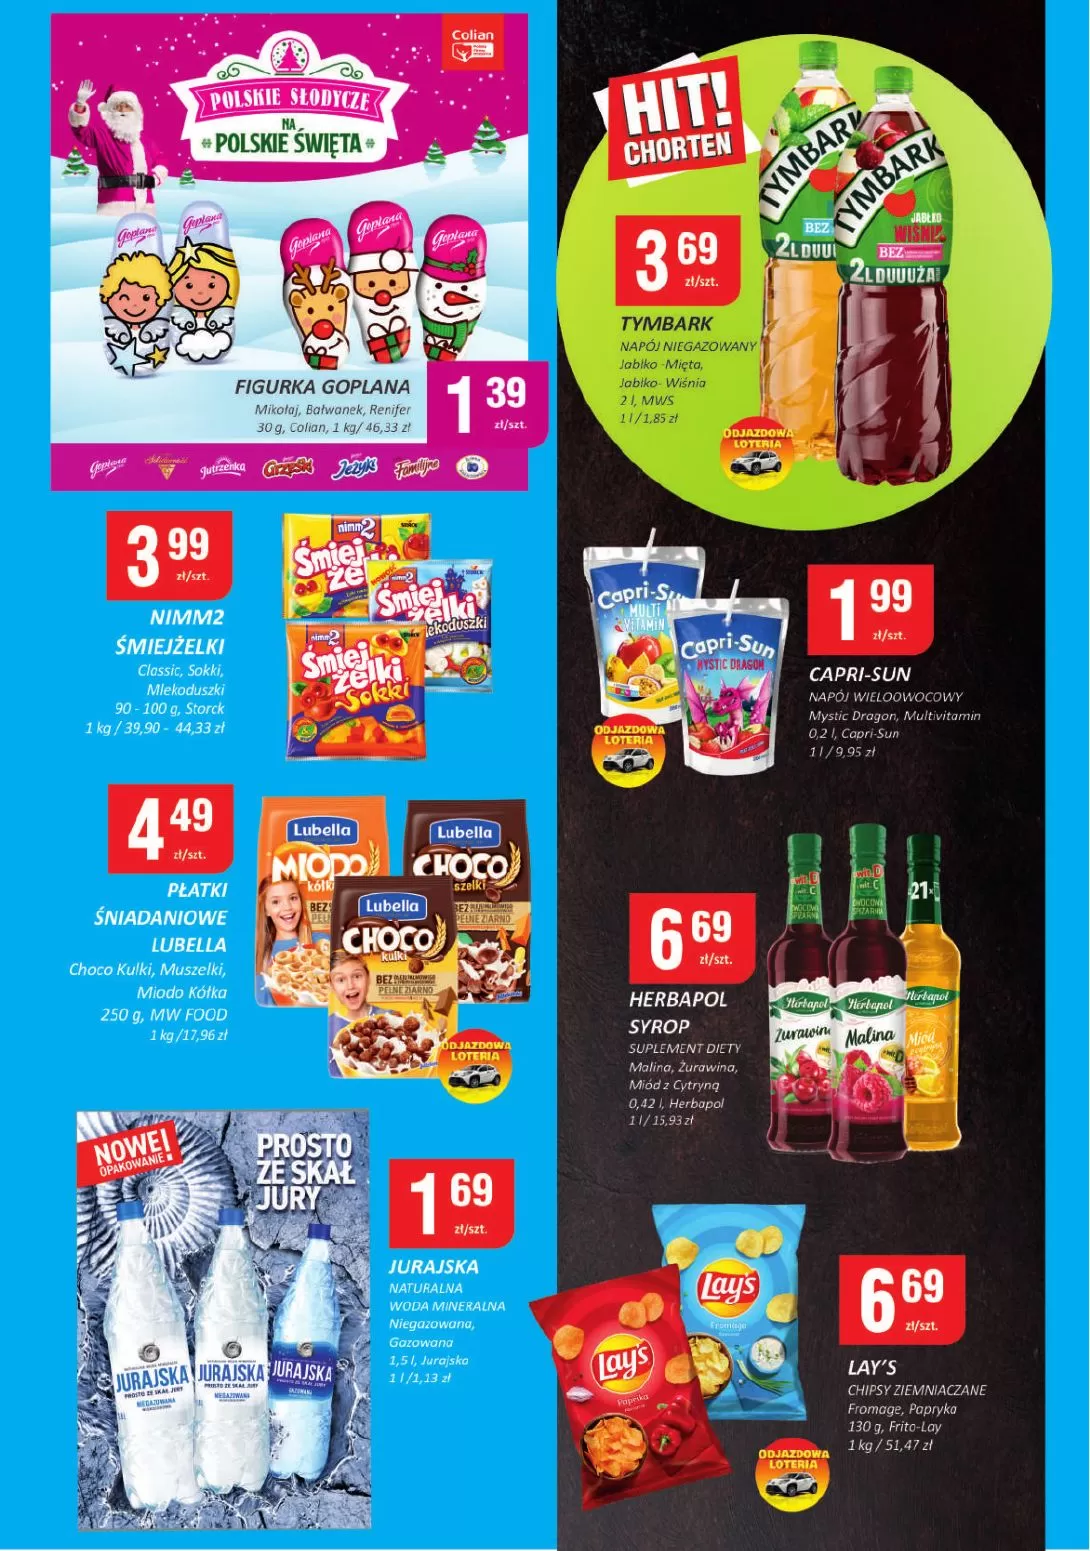 Gazetka promocyjna sklepu Chorten - Spar mini Supermarket  - data obowiązywania: od 23.11 do 06.12